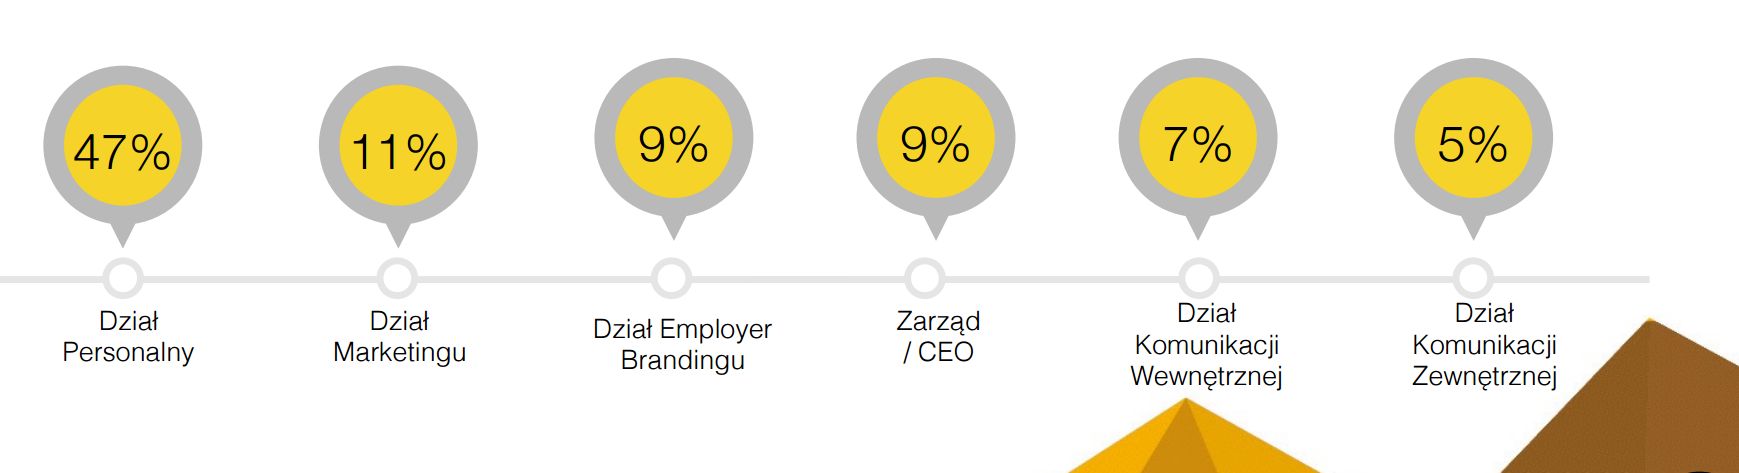 Kto jest odpowiedzialny za employer branding w polskich firmach? (Źródło: HRM)